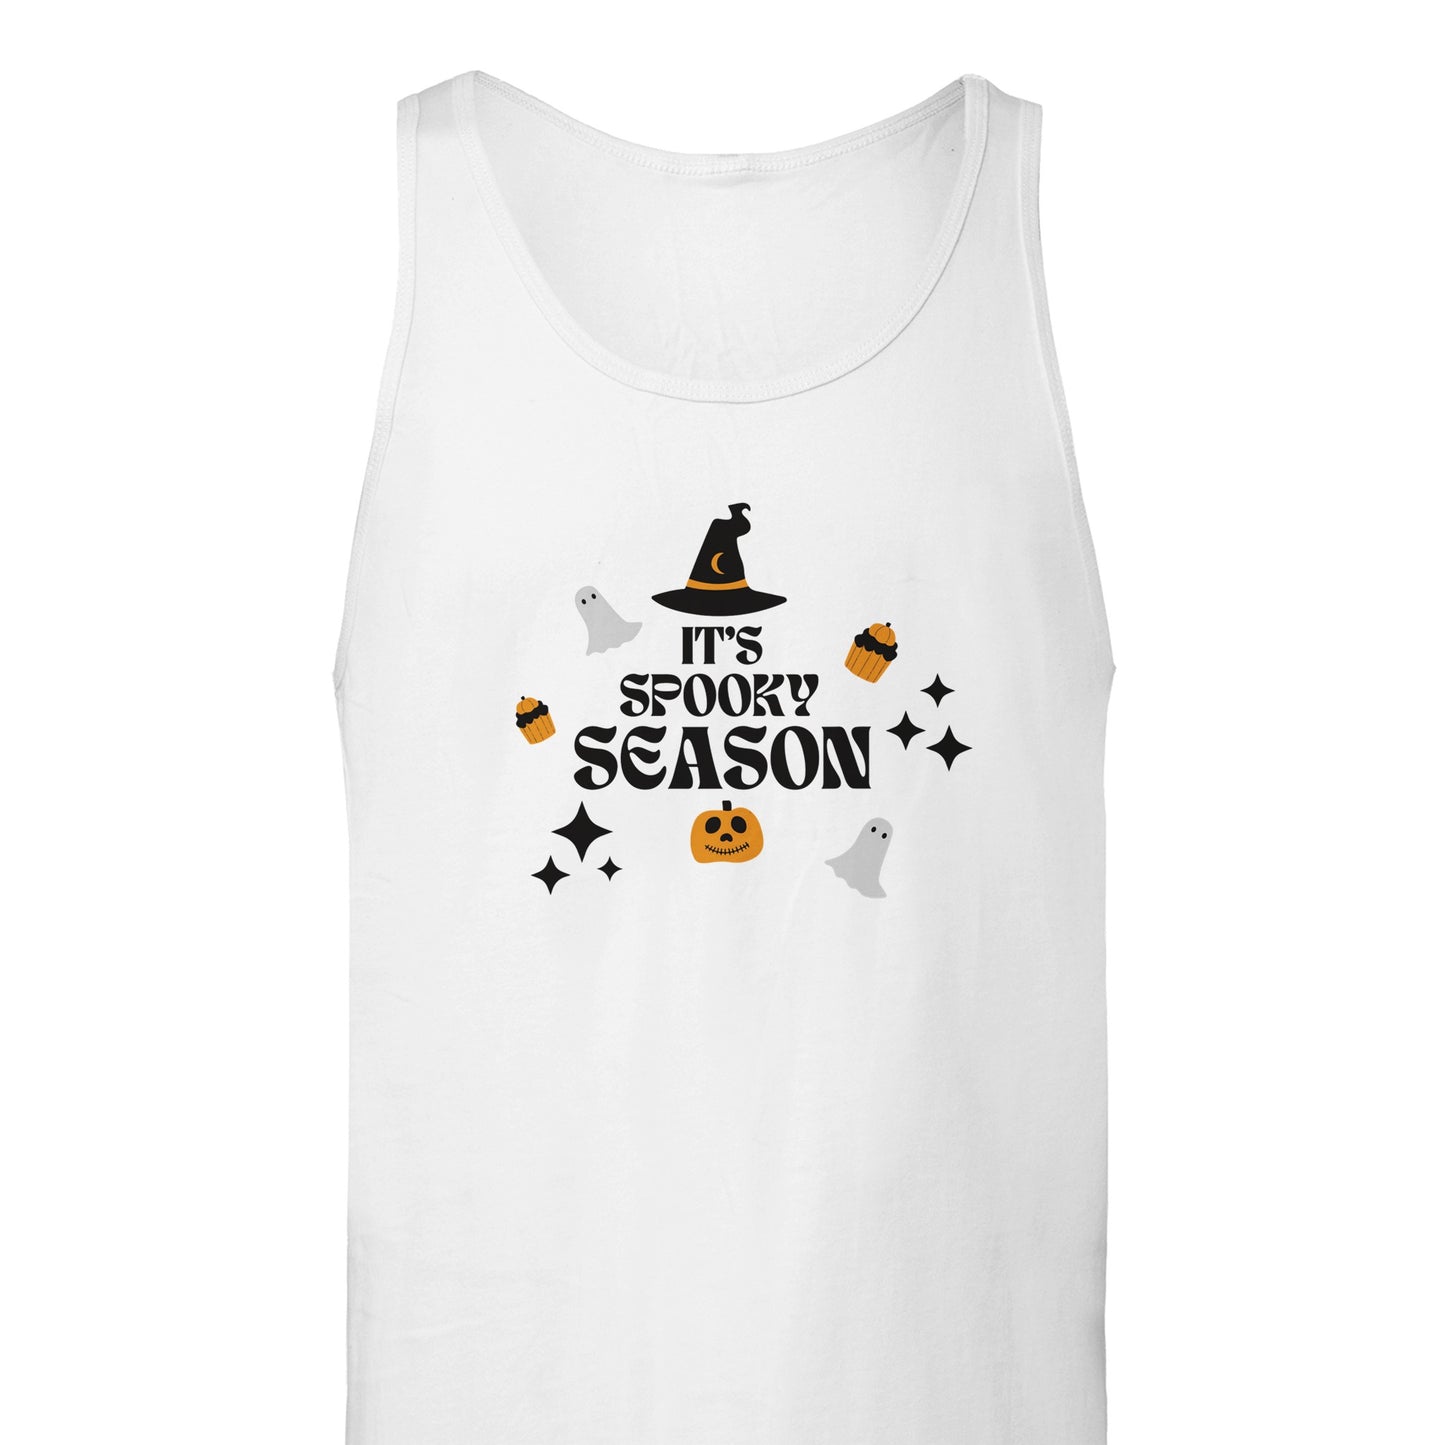 It's Spooky Season - It's Spooky Season - Premium Unisex Tank Top